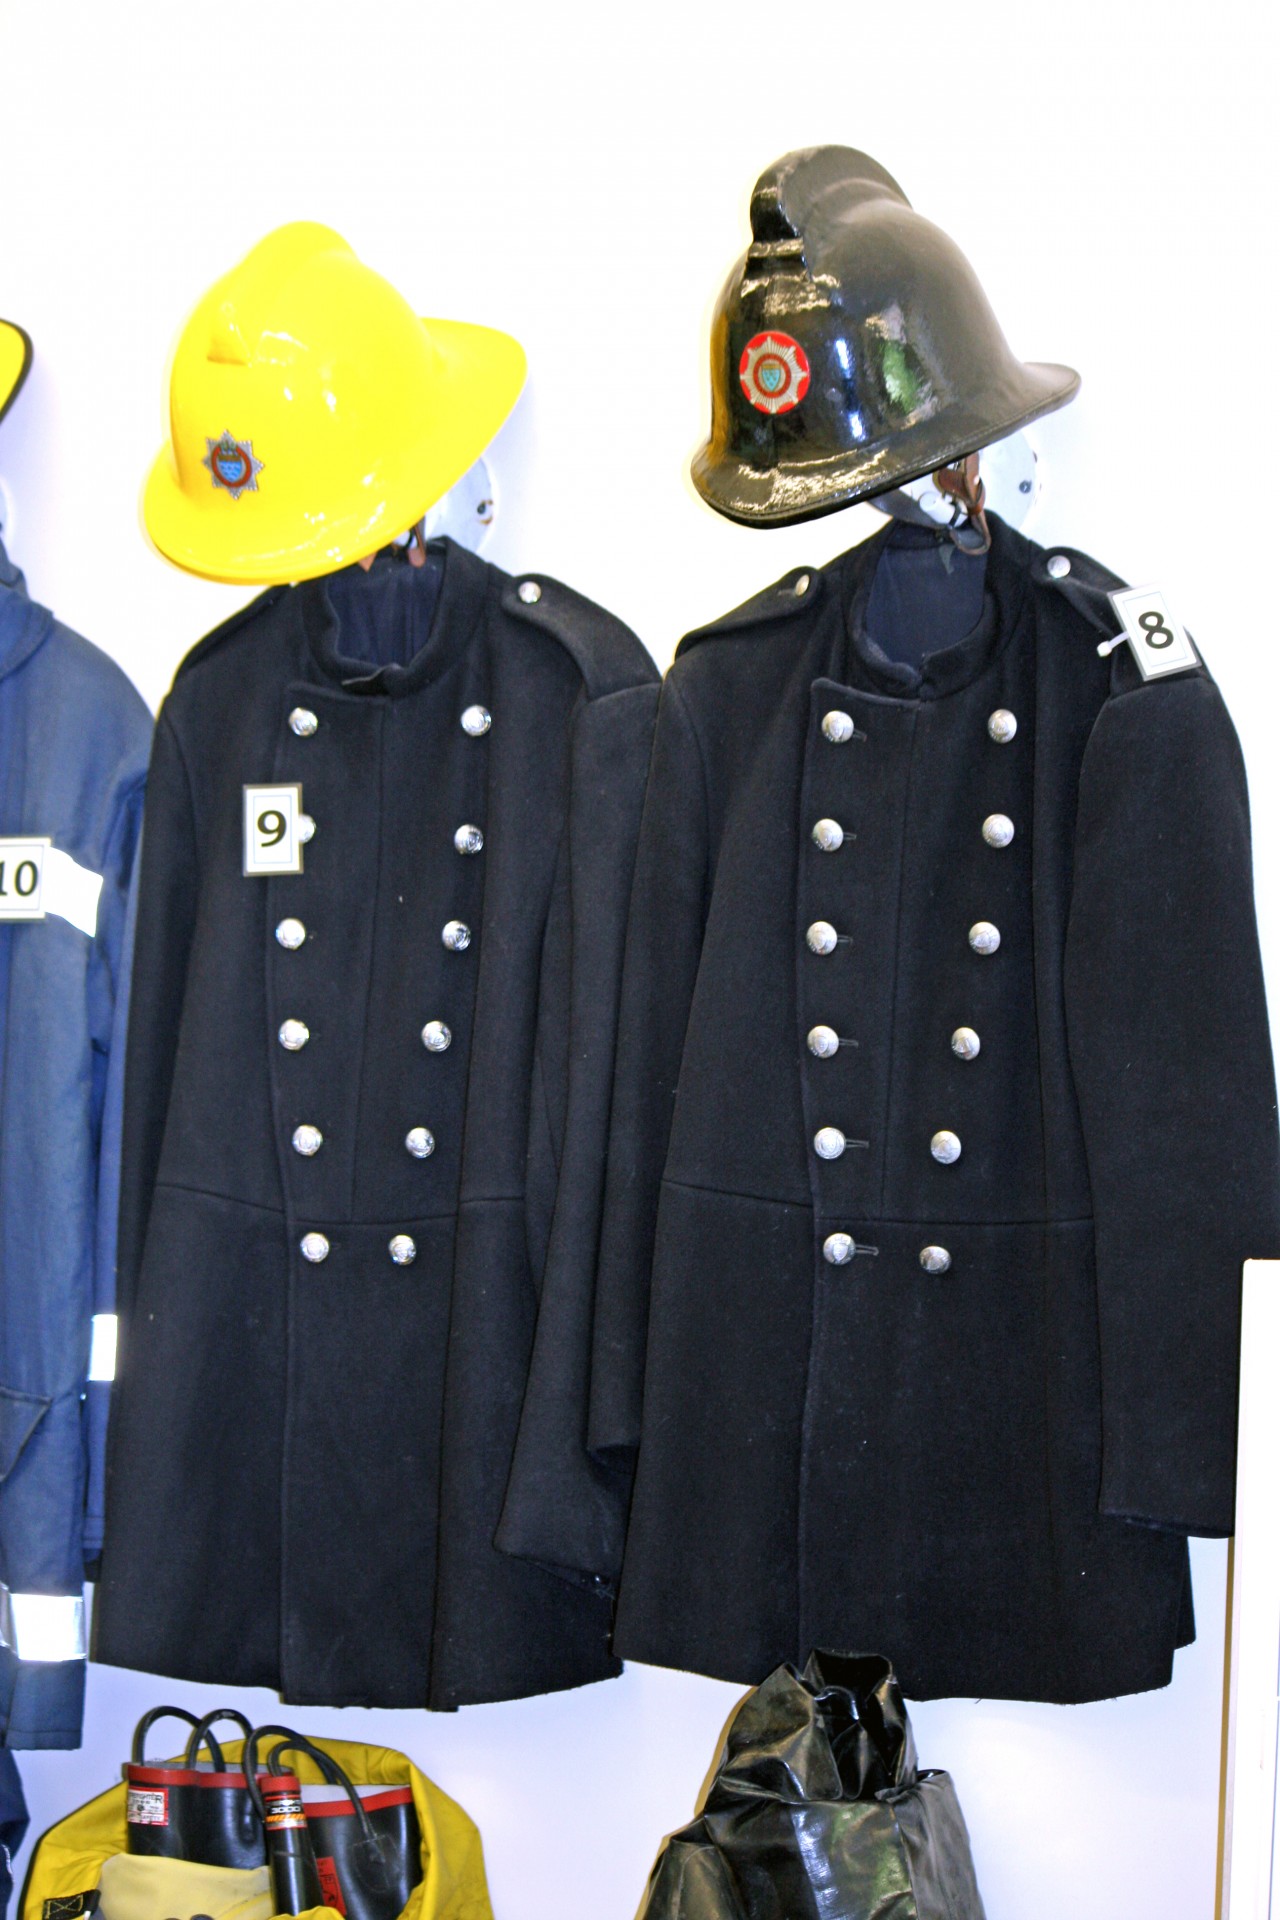 firemans uniform firefighters uniform vintage free photo